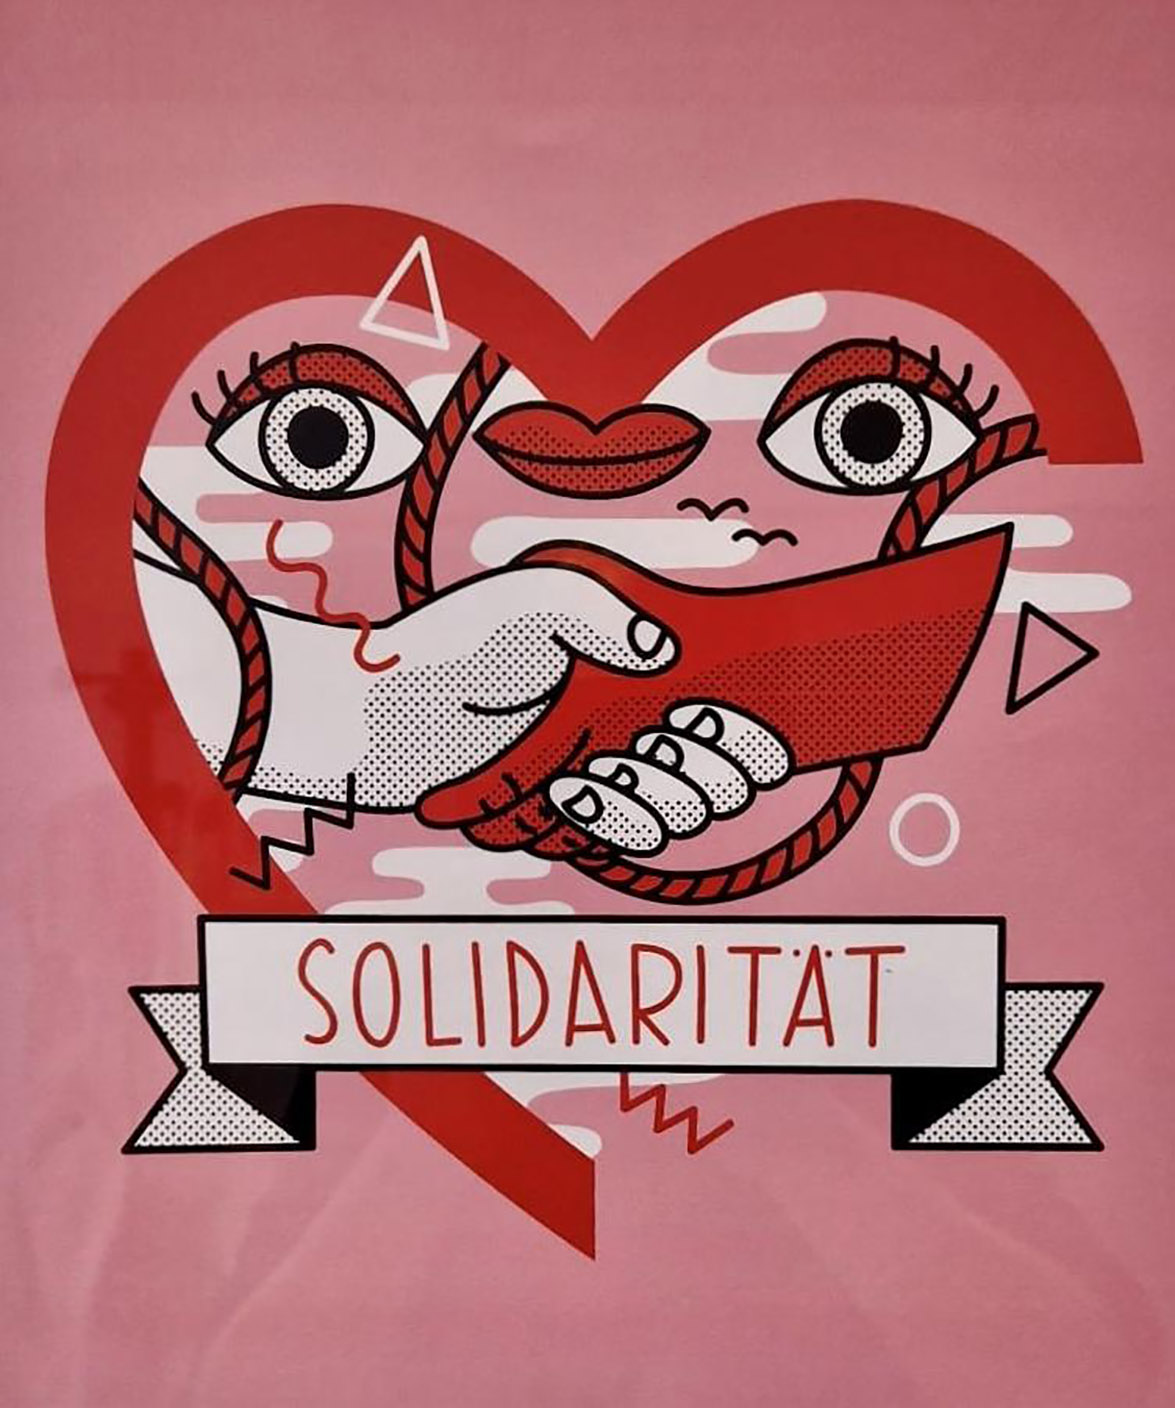 Plakat: Rosa, rotes Herz, zwei Hände die sich die Hand geben, eine rot und die andere weiß, zwei Augen und ein Mund in der Herzform. Darunter steht in Großbuchstaben: Solidarität